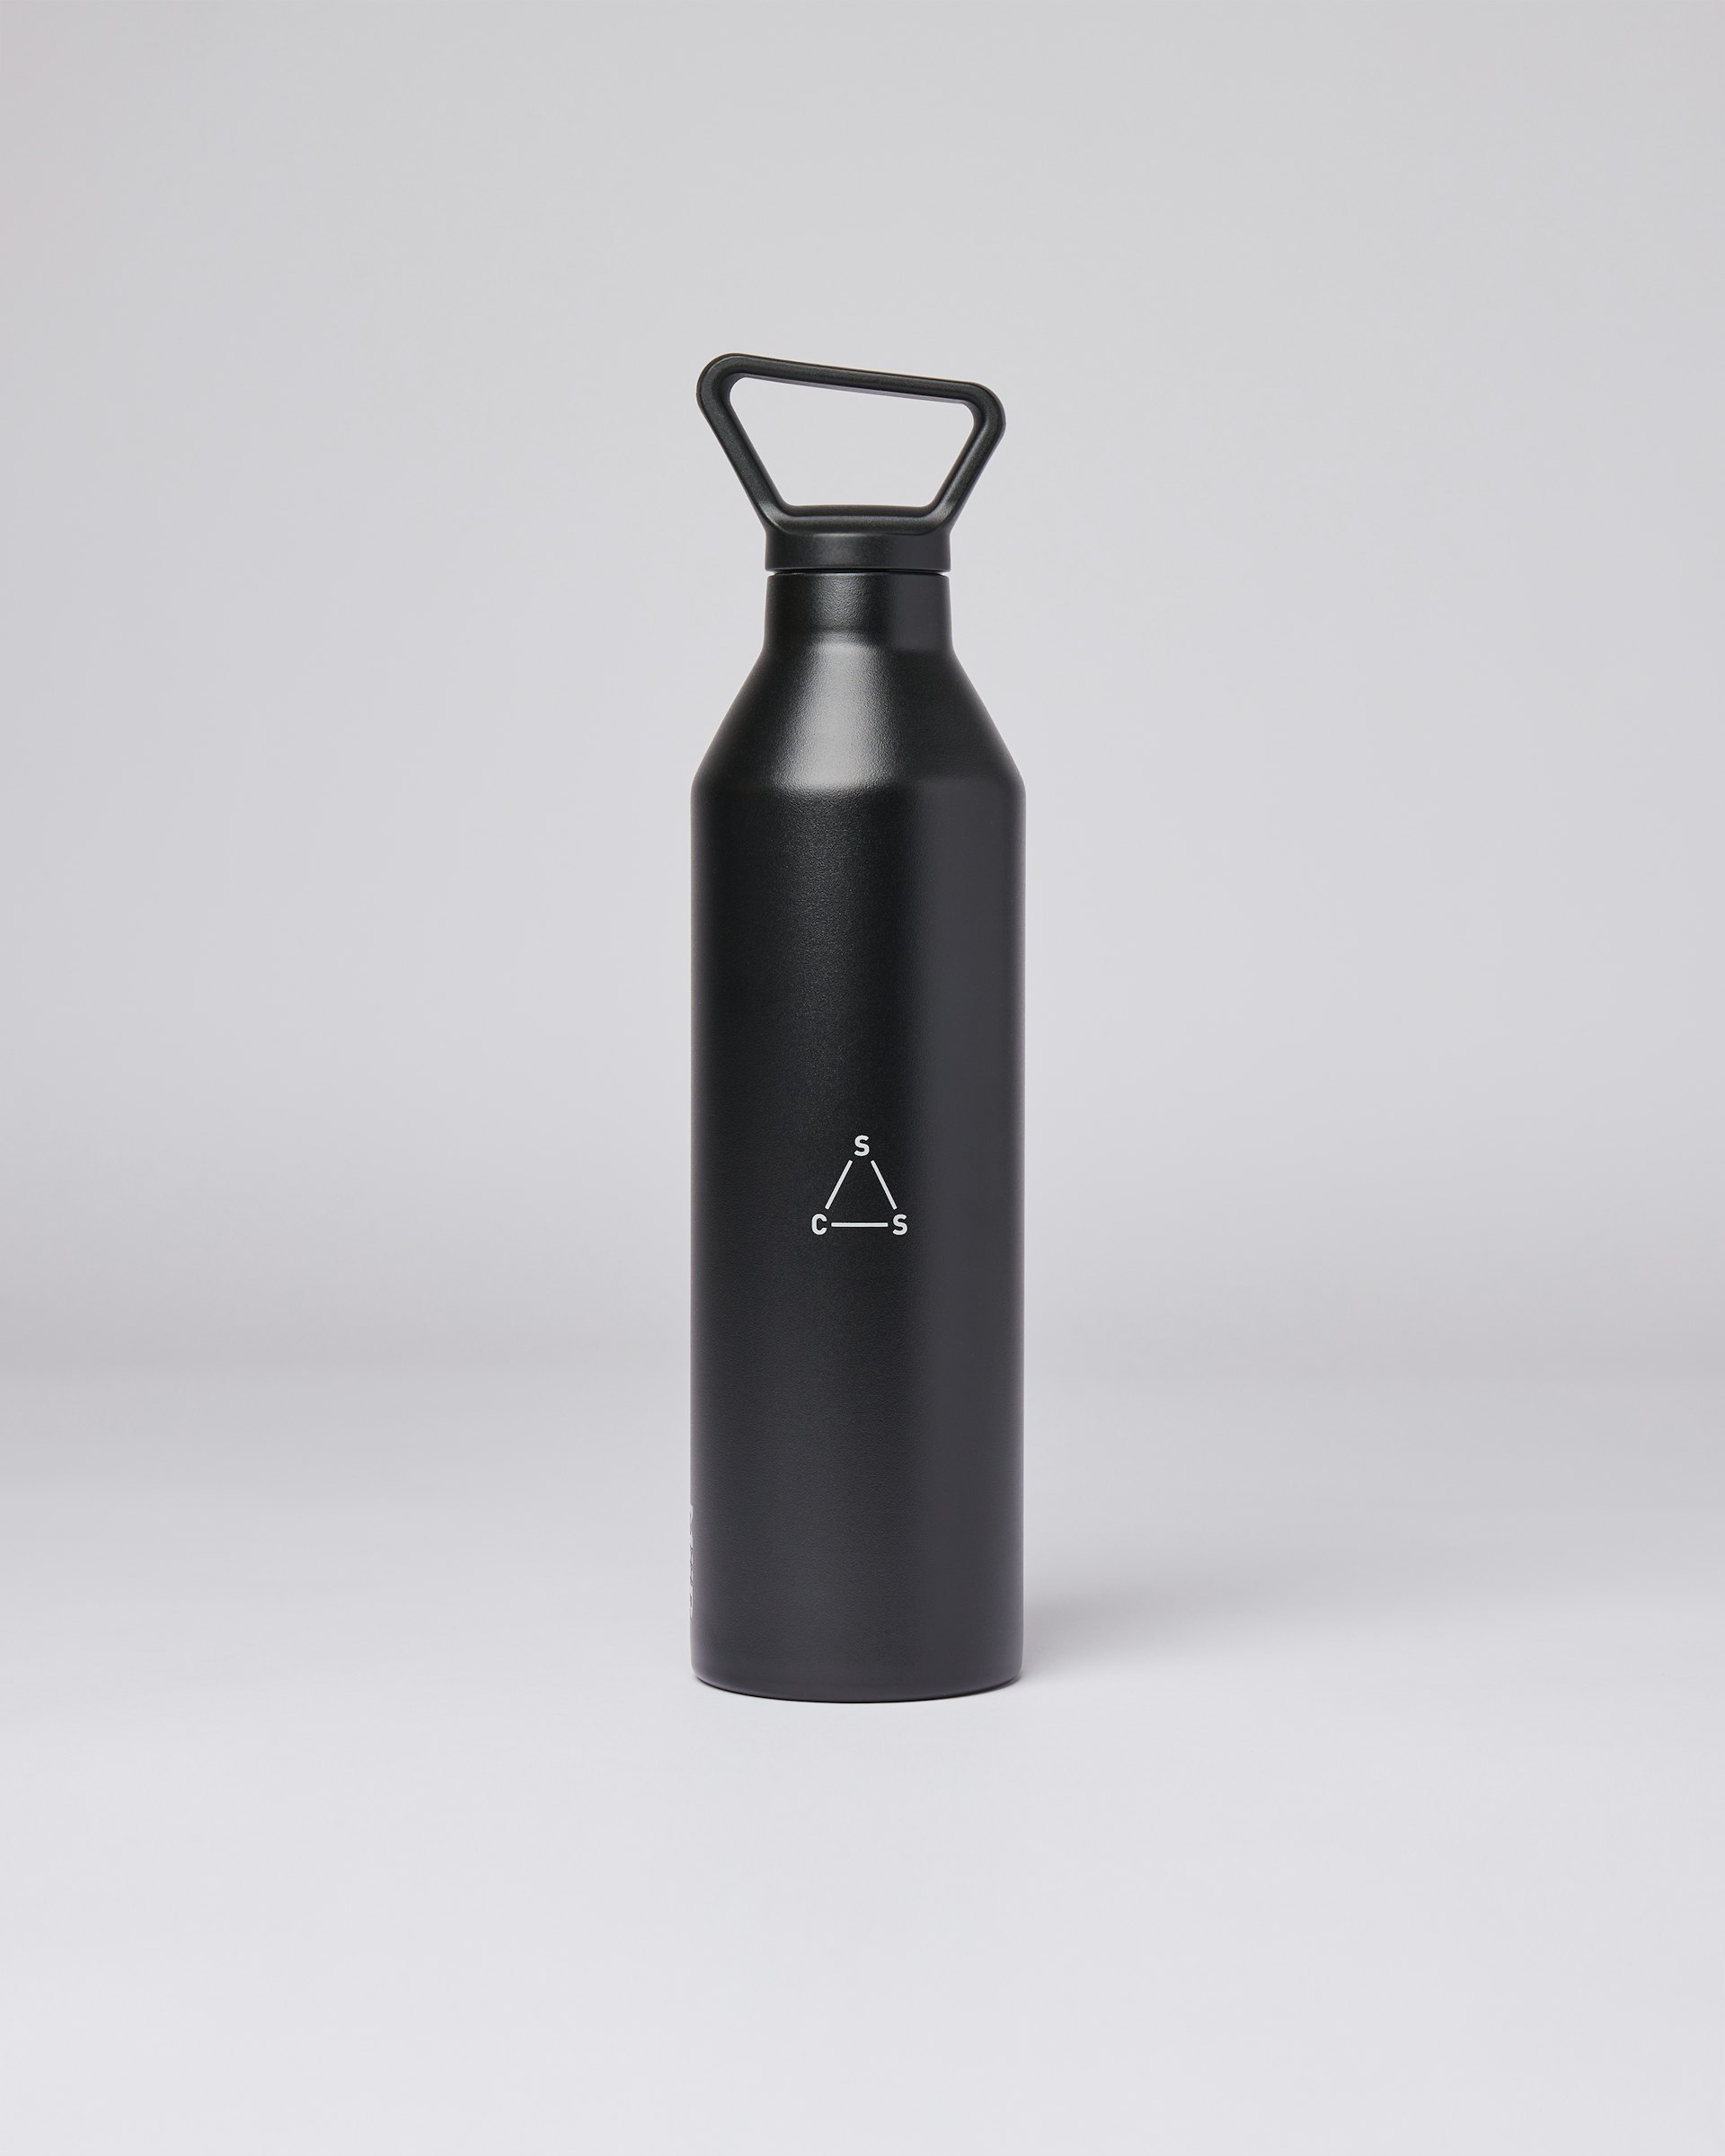 23oz Bottle gehört zur kategorie Accessoires und ist farbig black